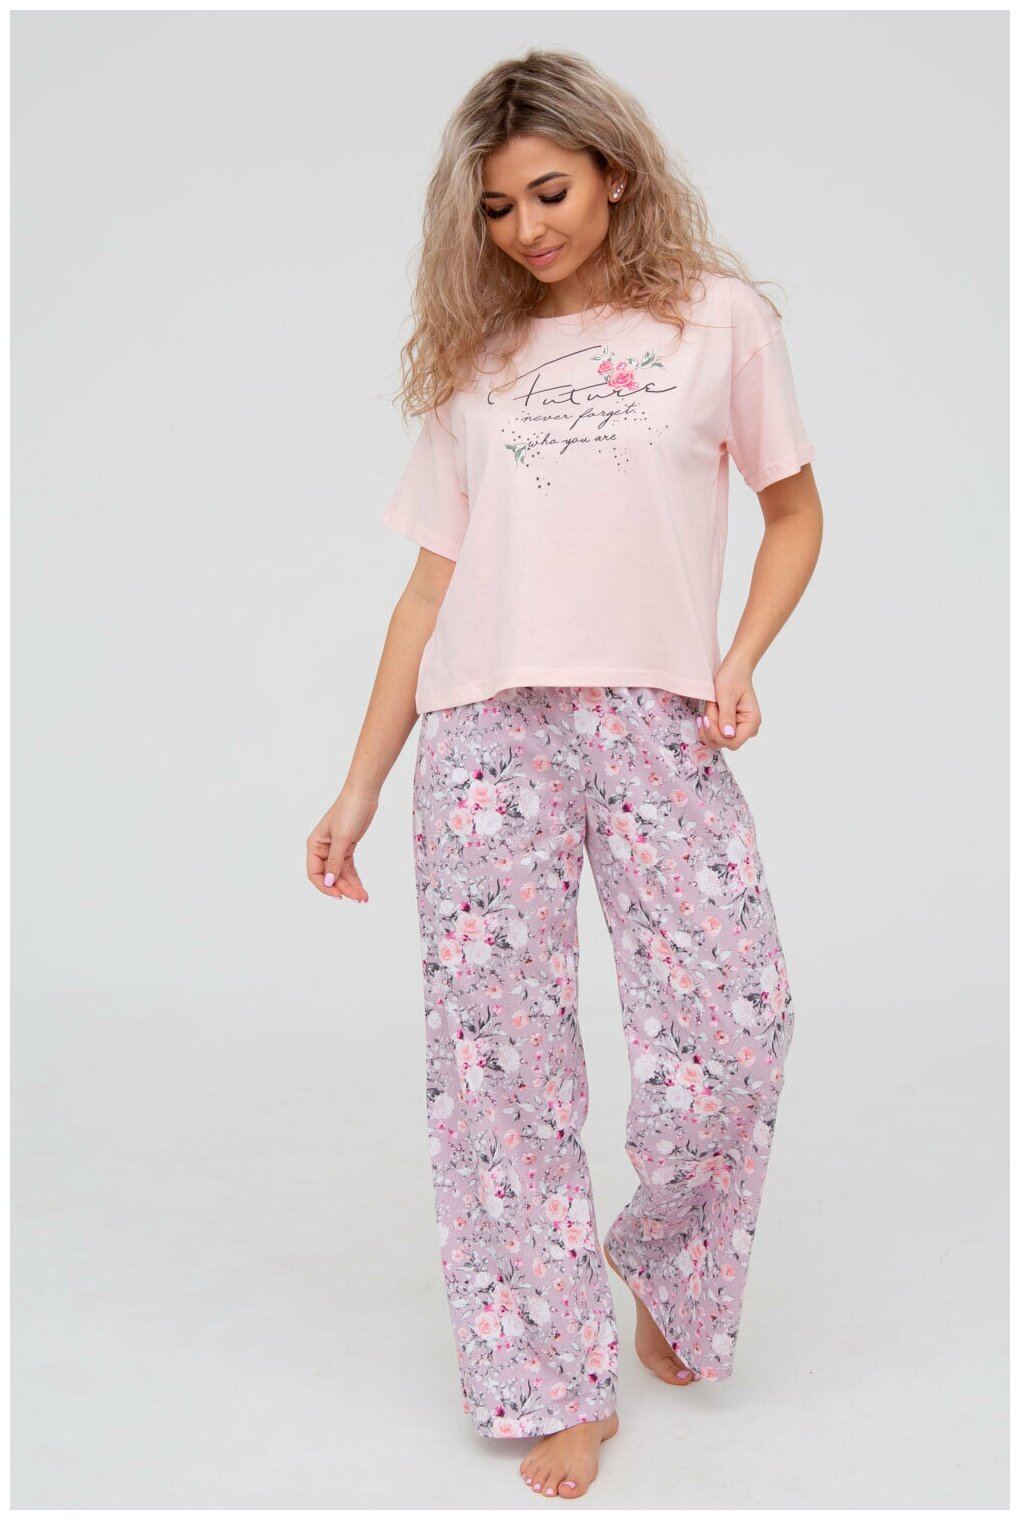 Пижама DIANIDA М-799 размеры 44-54 (54, Розовый) - фотография № 1